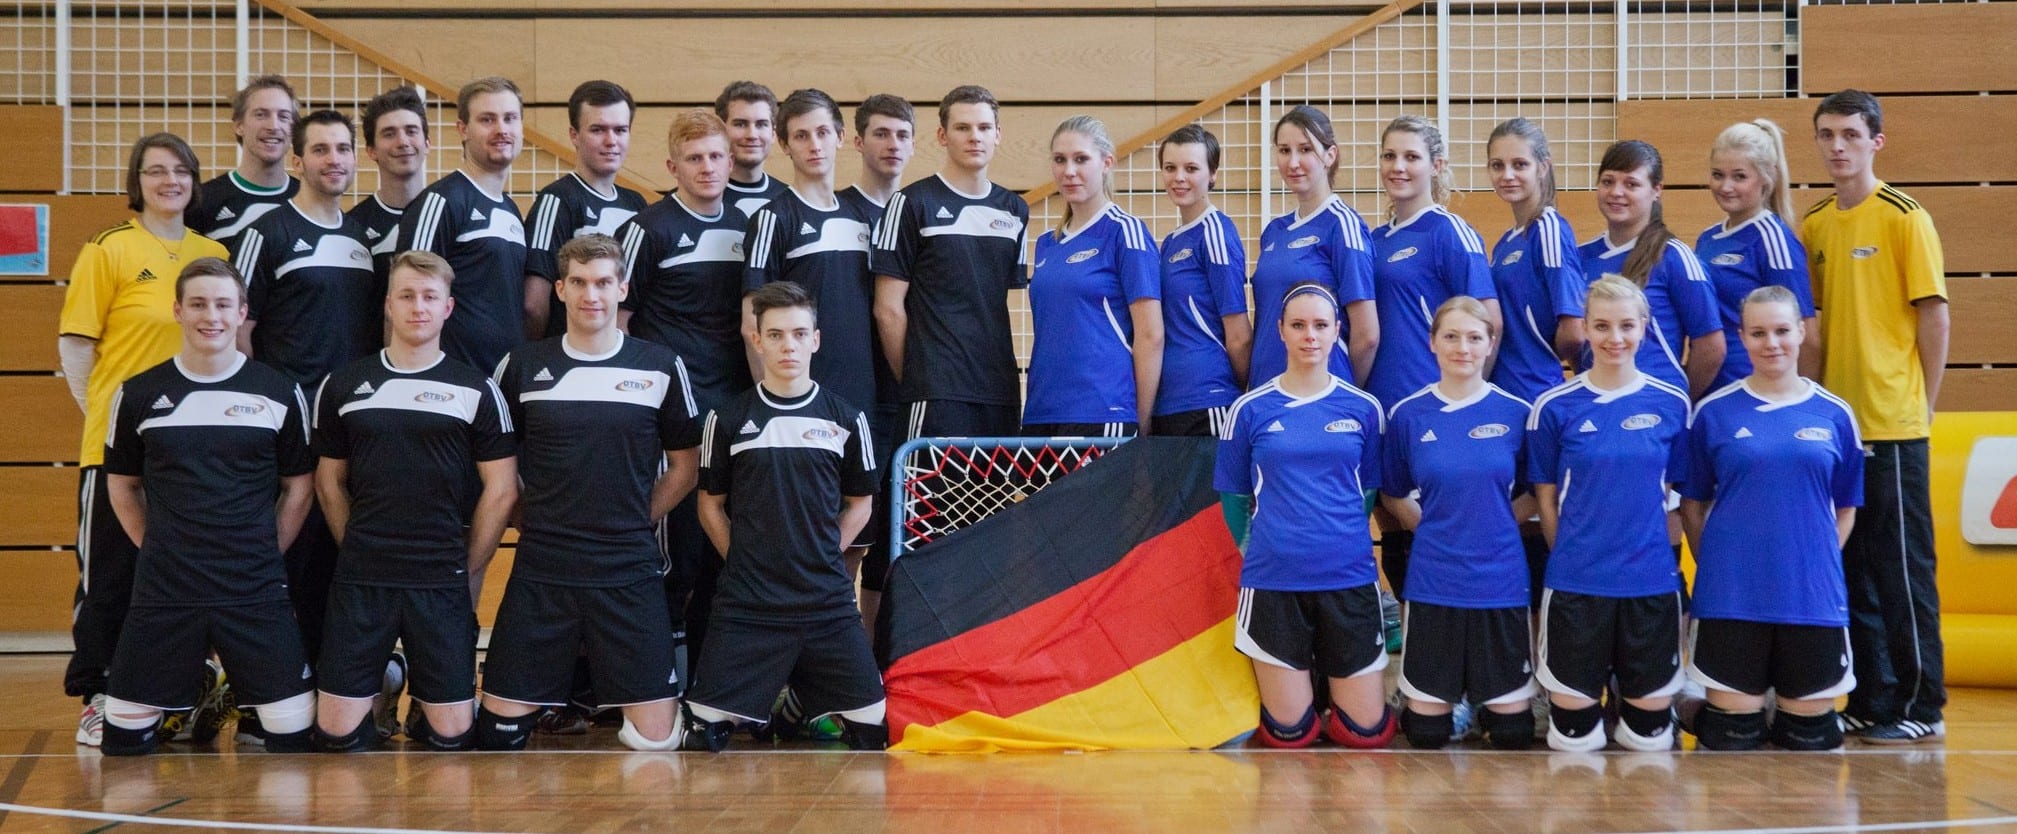 Der deutsche Nationalkader bei den Geneva Indoors 2013.